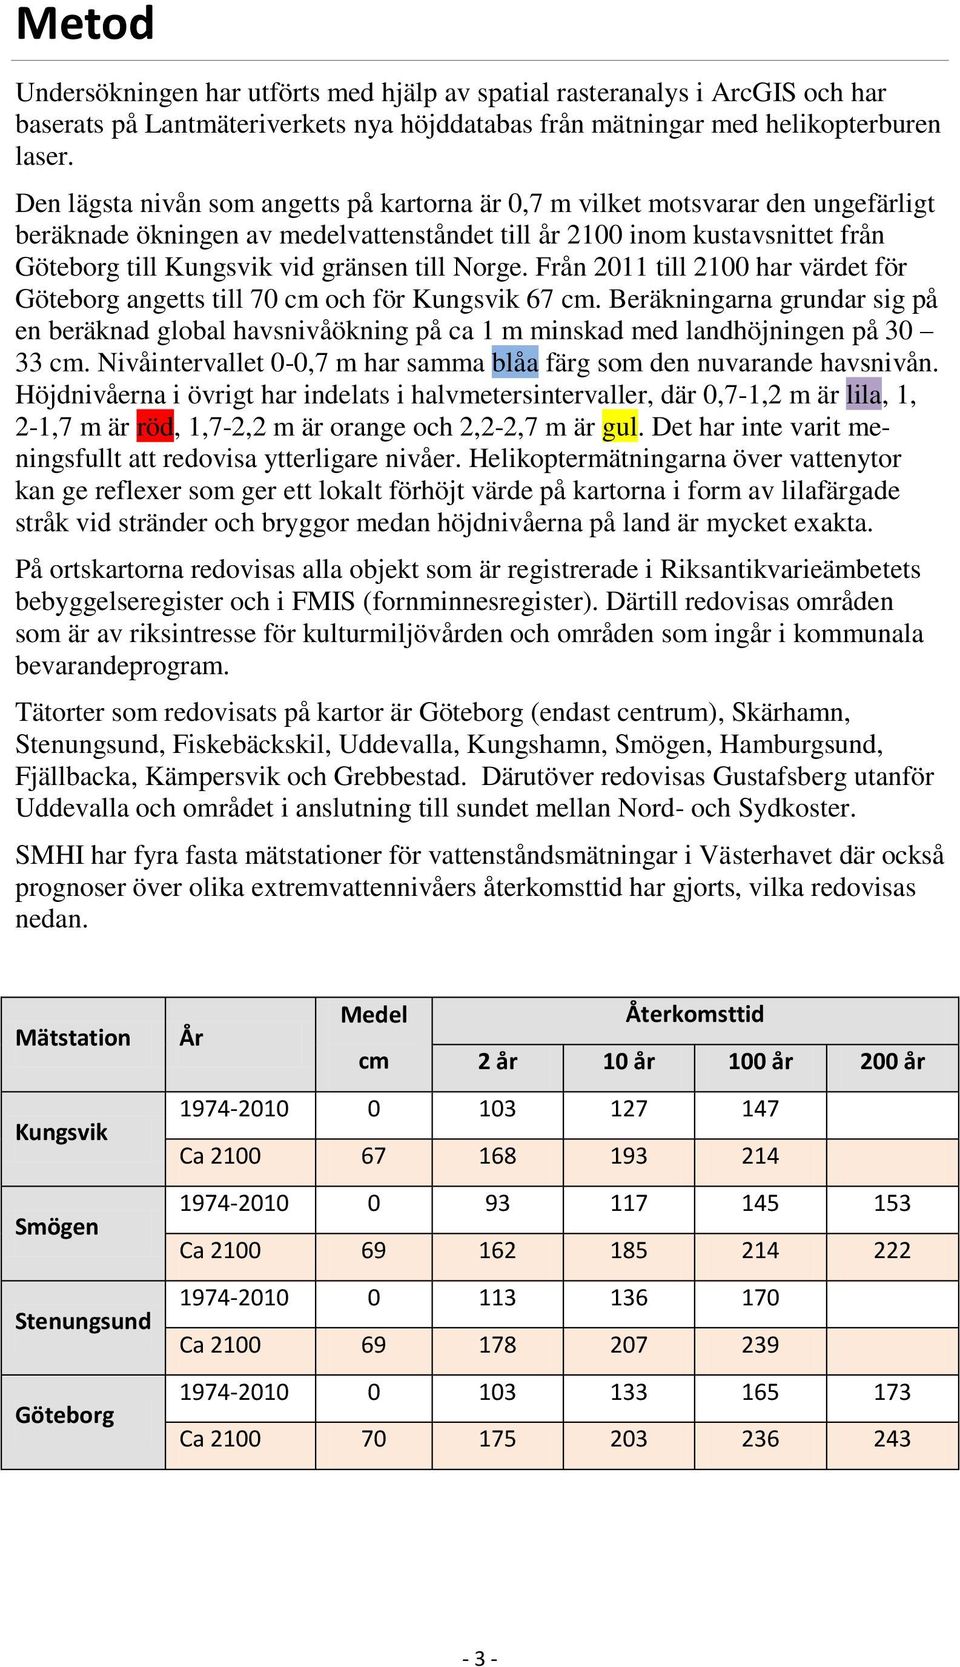 till Norge. Från 2011 till 2100 har värdet för Göteborg angetts till 70 cm och för Kungsvik 67 cm.